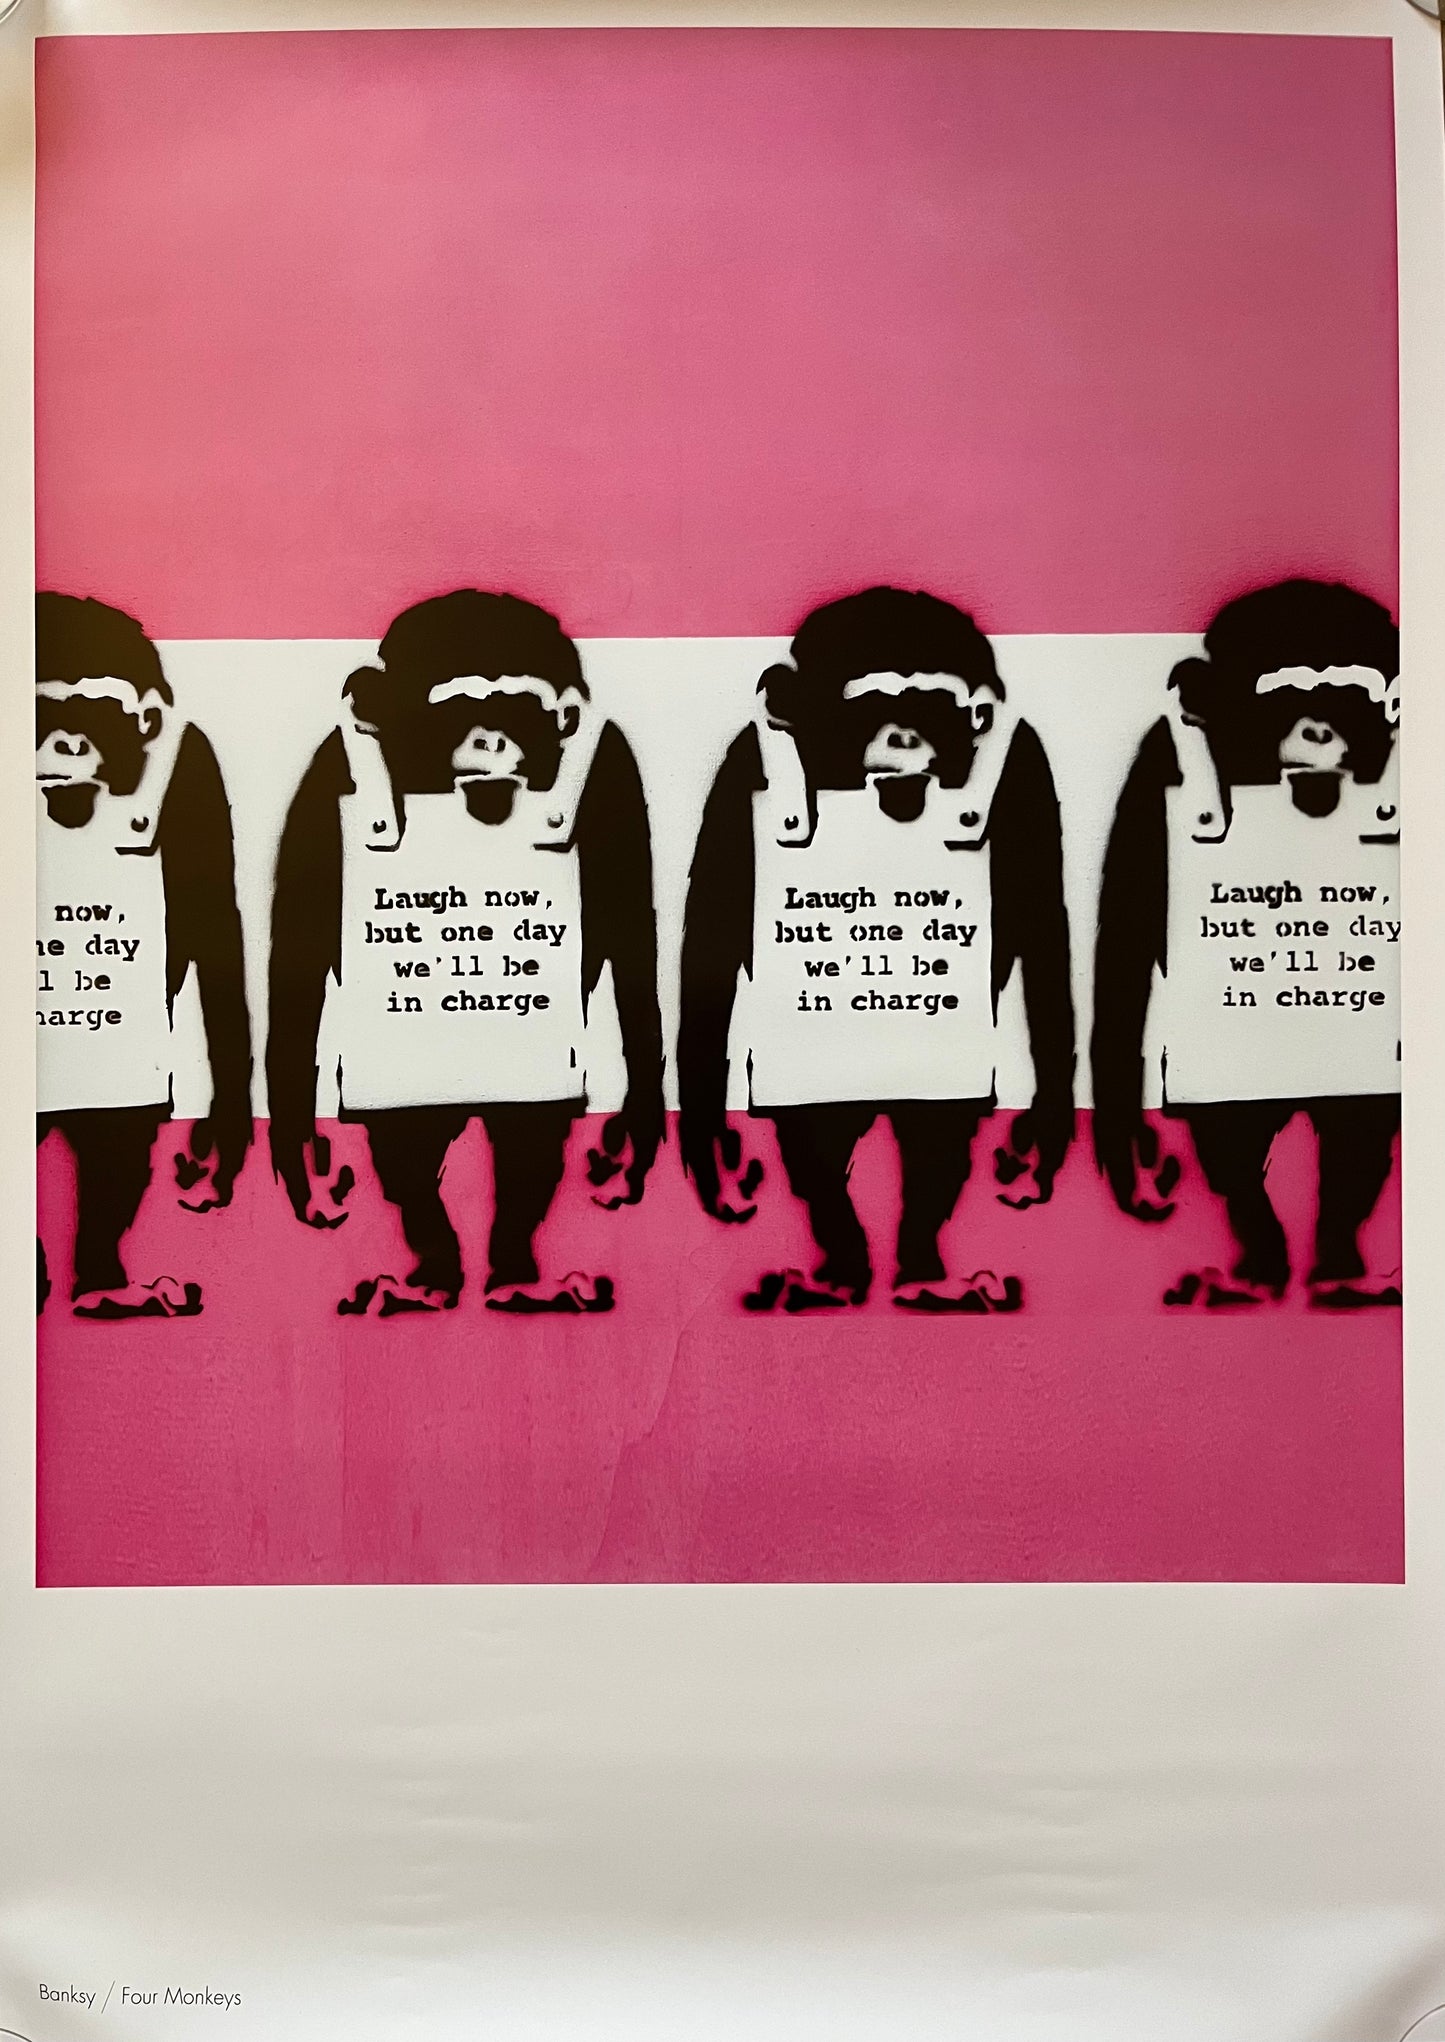 Poster ufficiale - Banksy, Laugh Now, ma un giorno saremo noi a comandare - Banksy Laugh Now MocoMuseum (edizione rigorosamente limitata) - 2019 - MIGLIORE OFFERTA - RISPARMIA IL 15%!